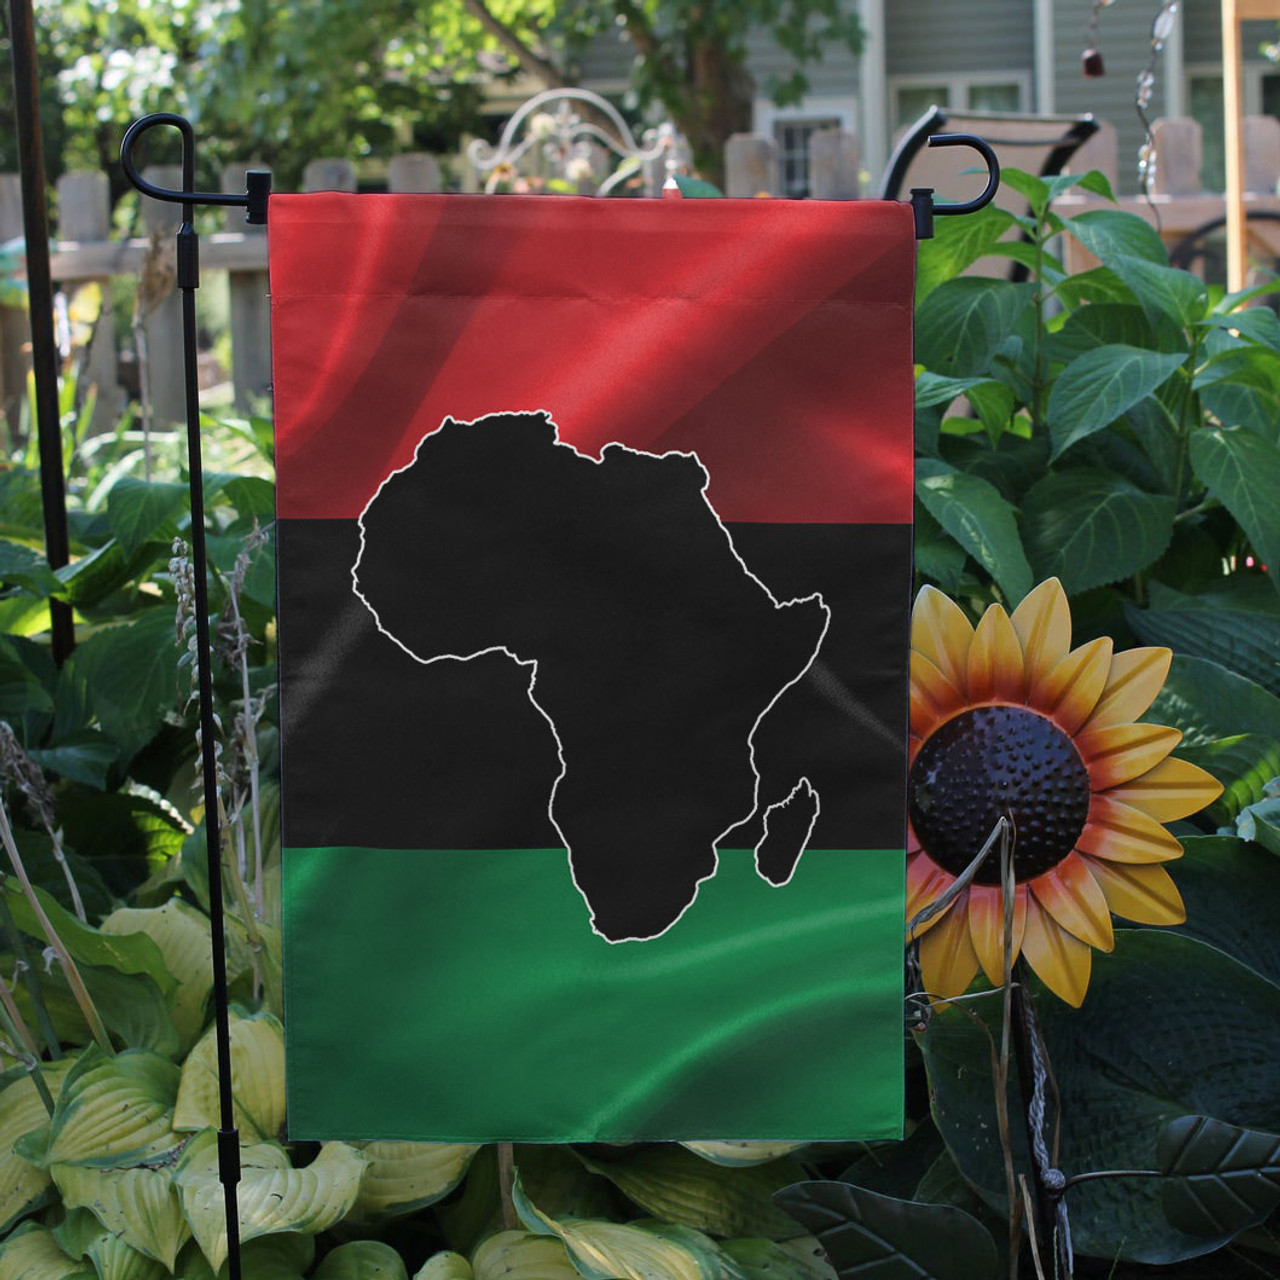 Pan-Afrikan Flag - Pan-Afrikan Flag With Map